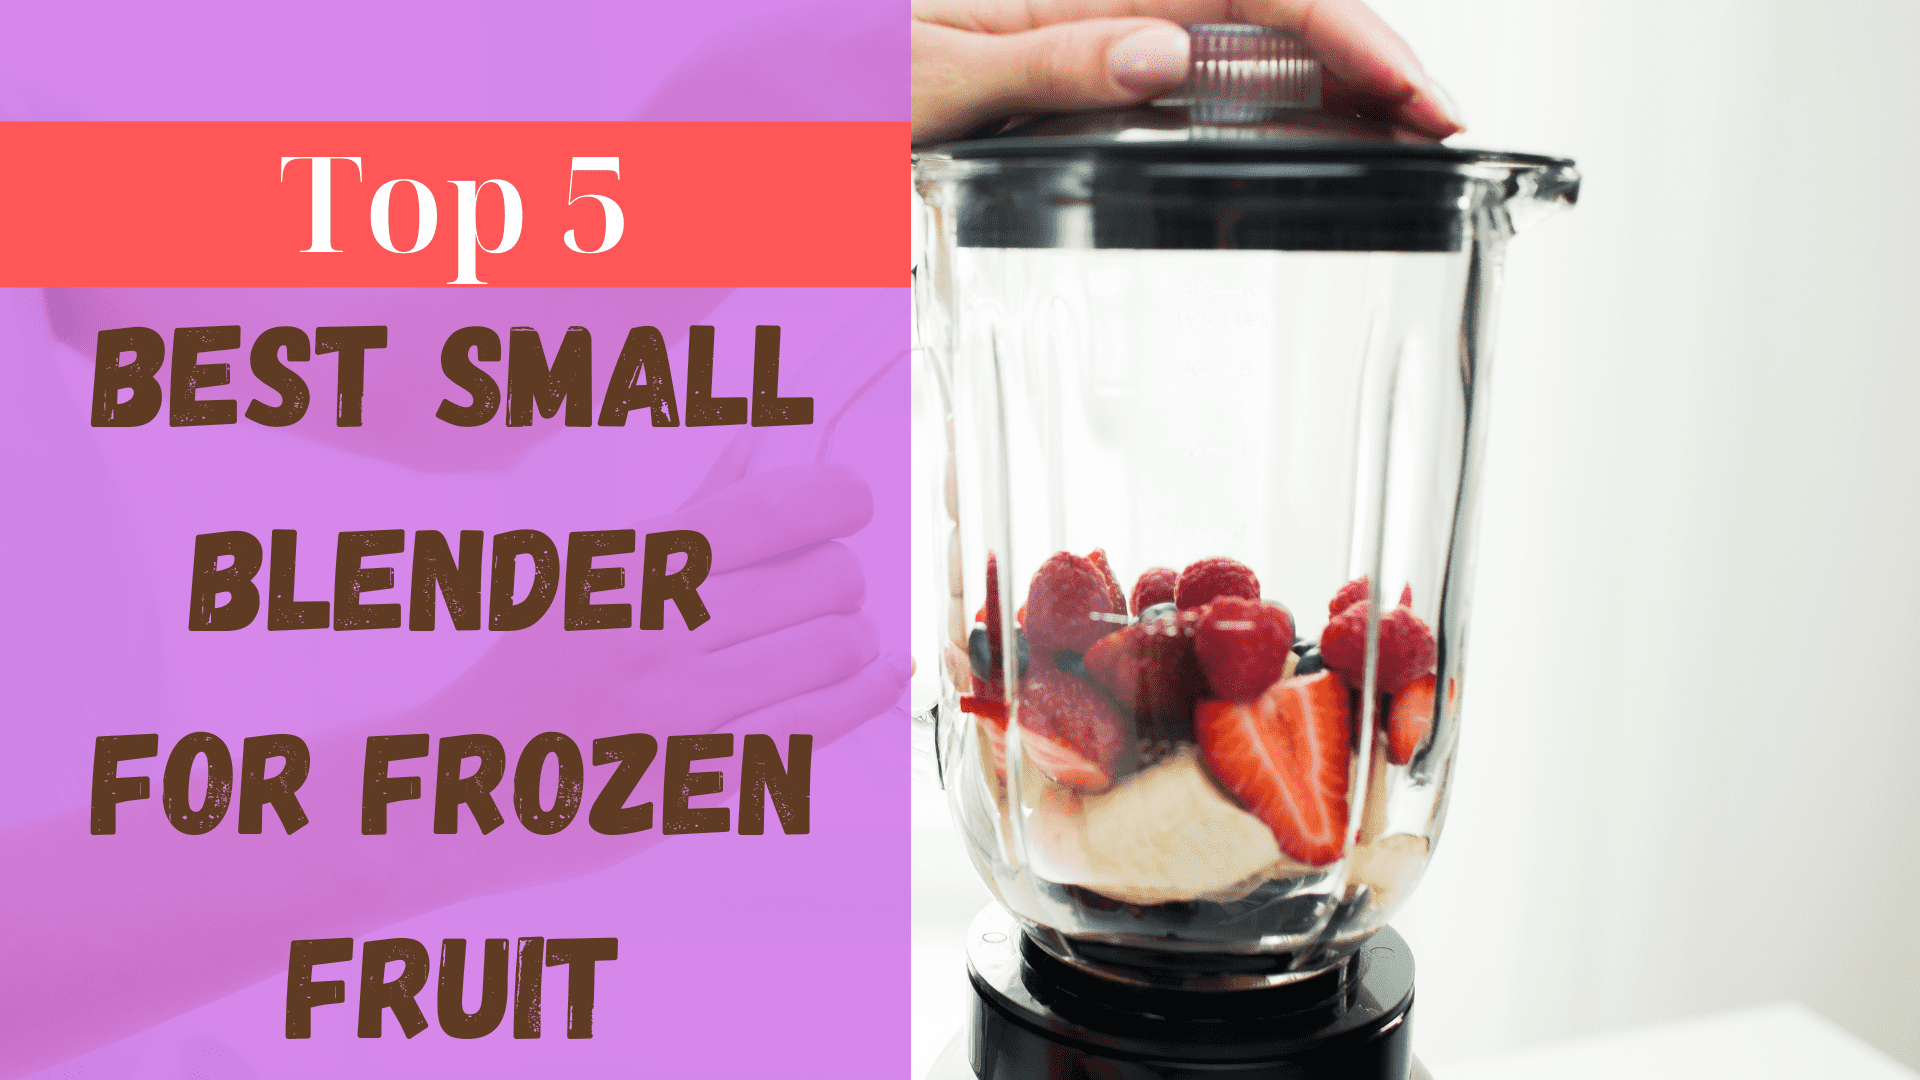 Best small blender for frozen fruit